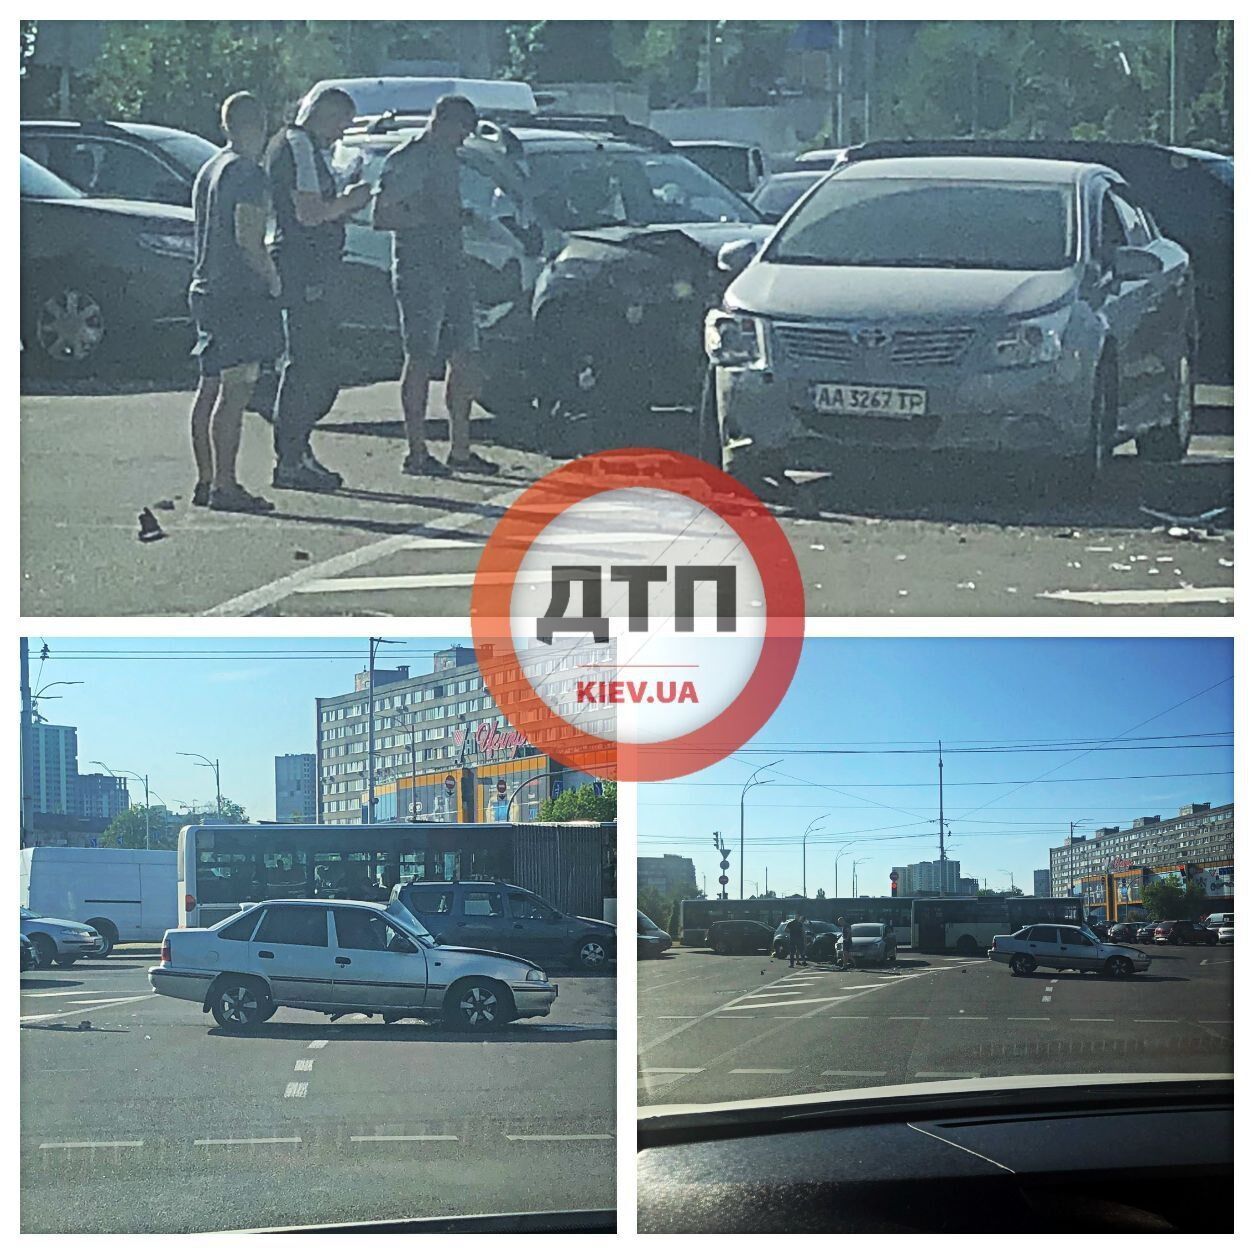 В Киеве водитель Renault, пытаясь проскочить перекресток, протаранил два автомобиля. Видео